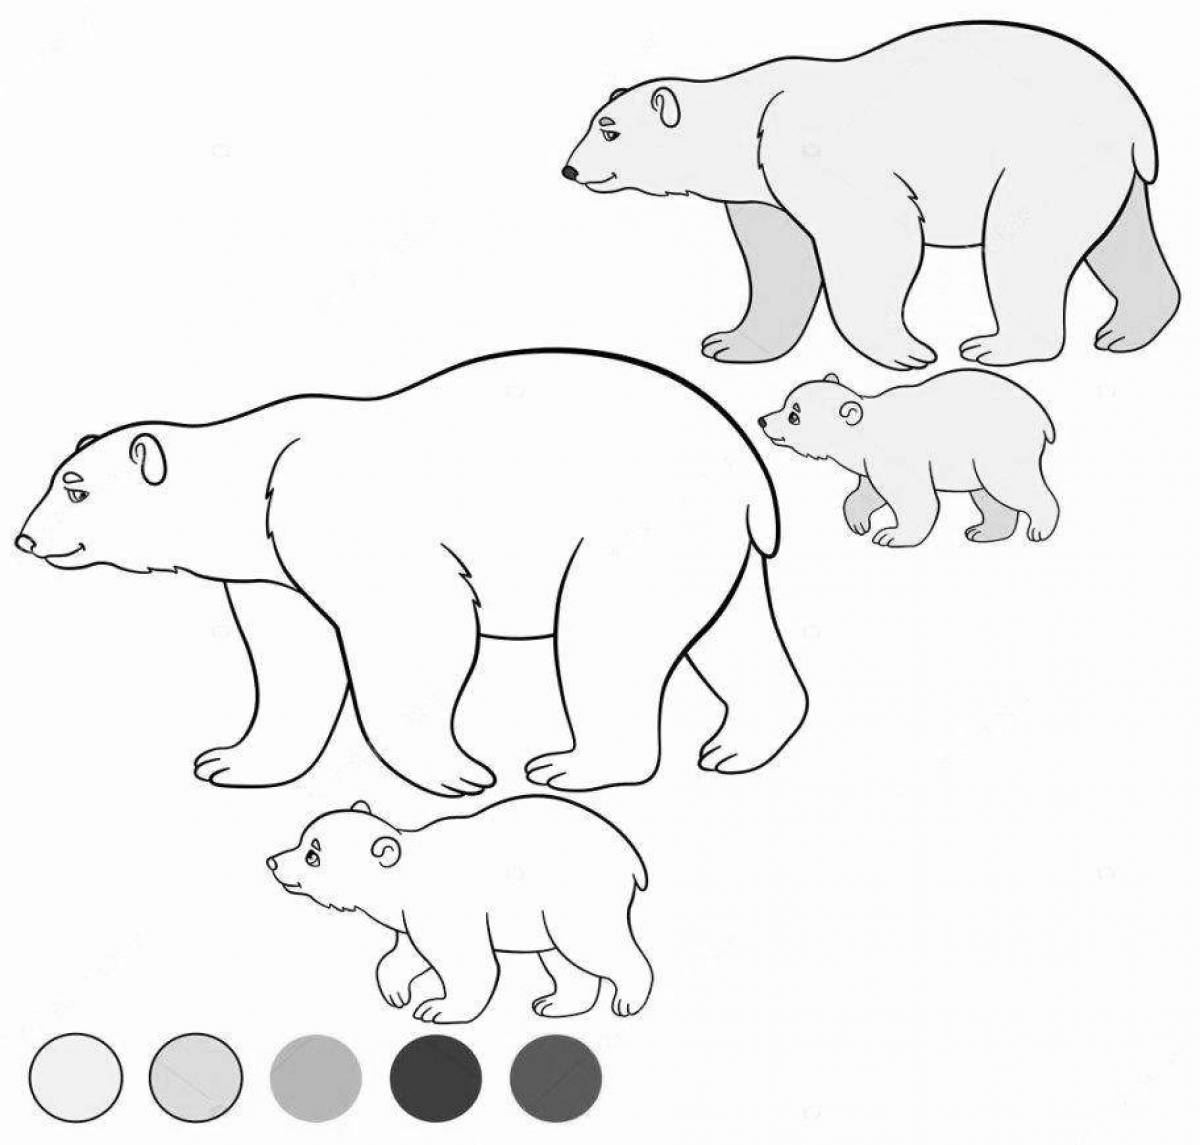 Увлекательная раскраска белого медведя